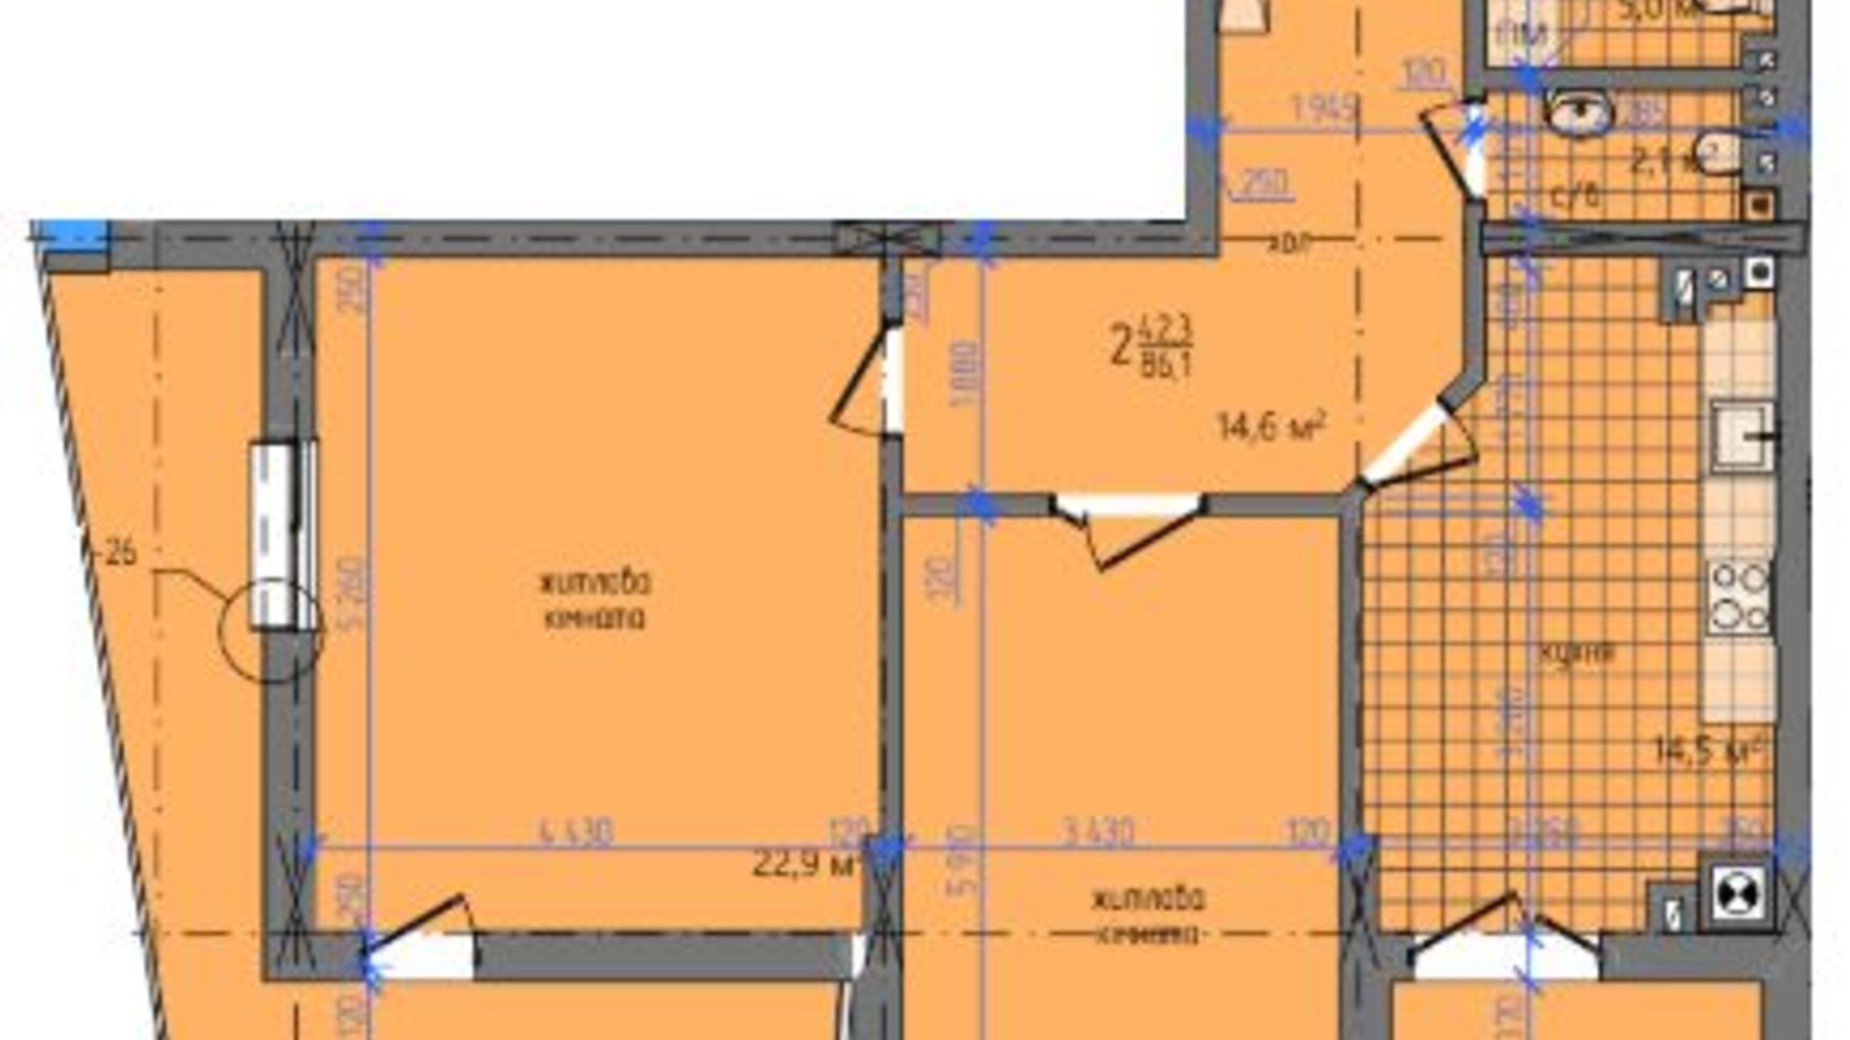 Планировка 2-комнатной квартиры в ЖК ул. Южно-Кольцевая, 5л 86.1 м², фото 367394